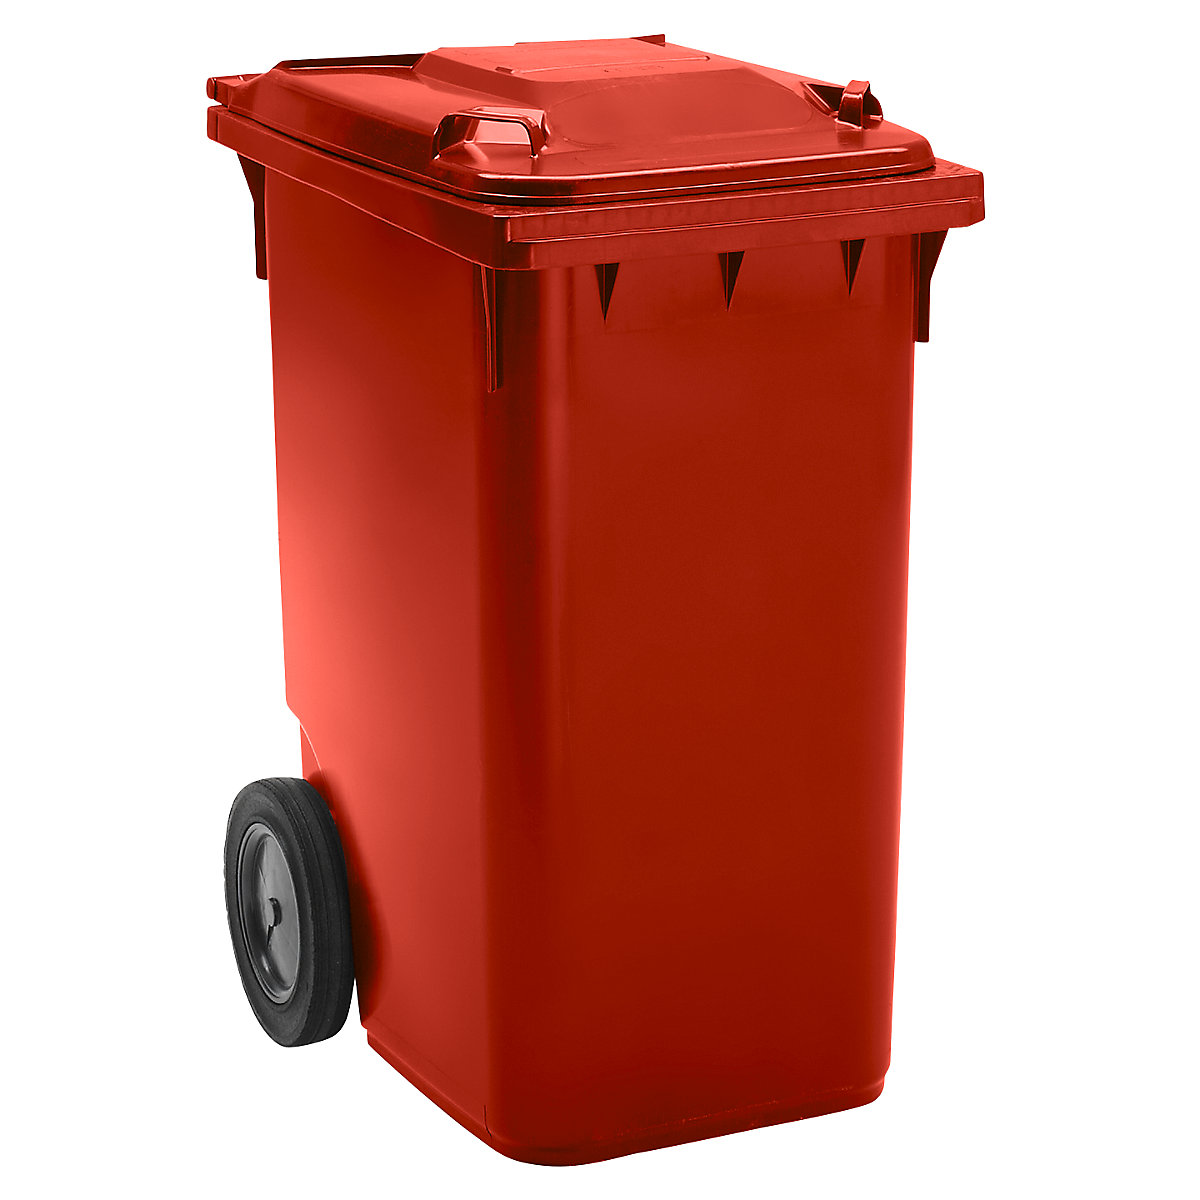 Pojemnik na odpady, z tworzywa, DIN EN 840, poj. 360 l, wys. x szer. x głęb. 665 x 1115 x 880 mm, Ø kółka 300 mm, czerwone, dostawa od 5 szt.-9